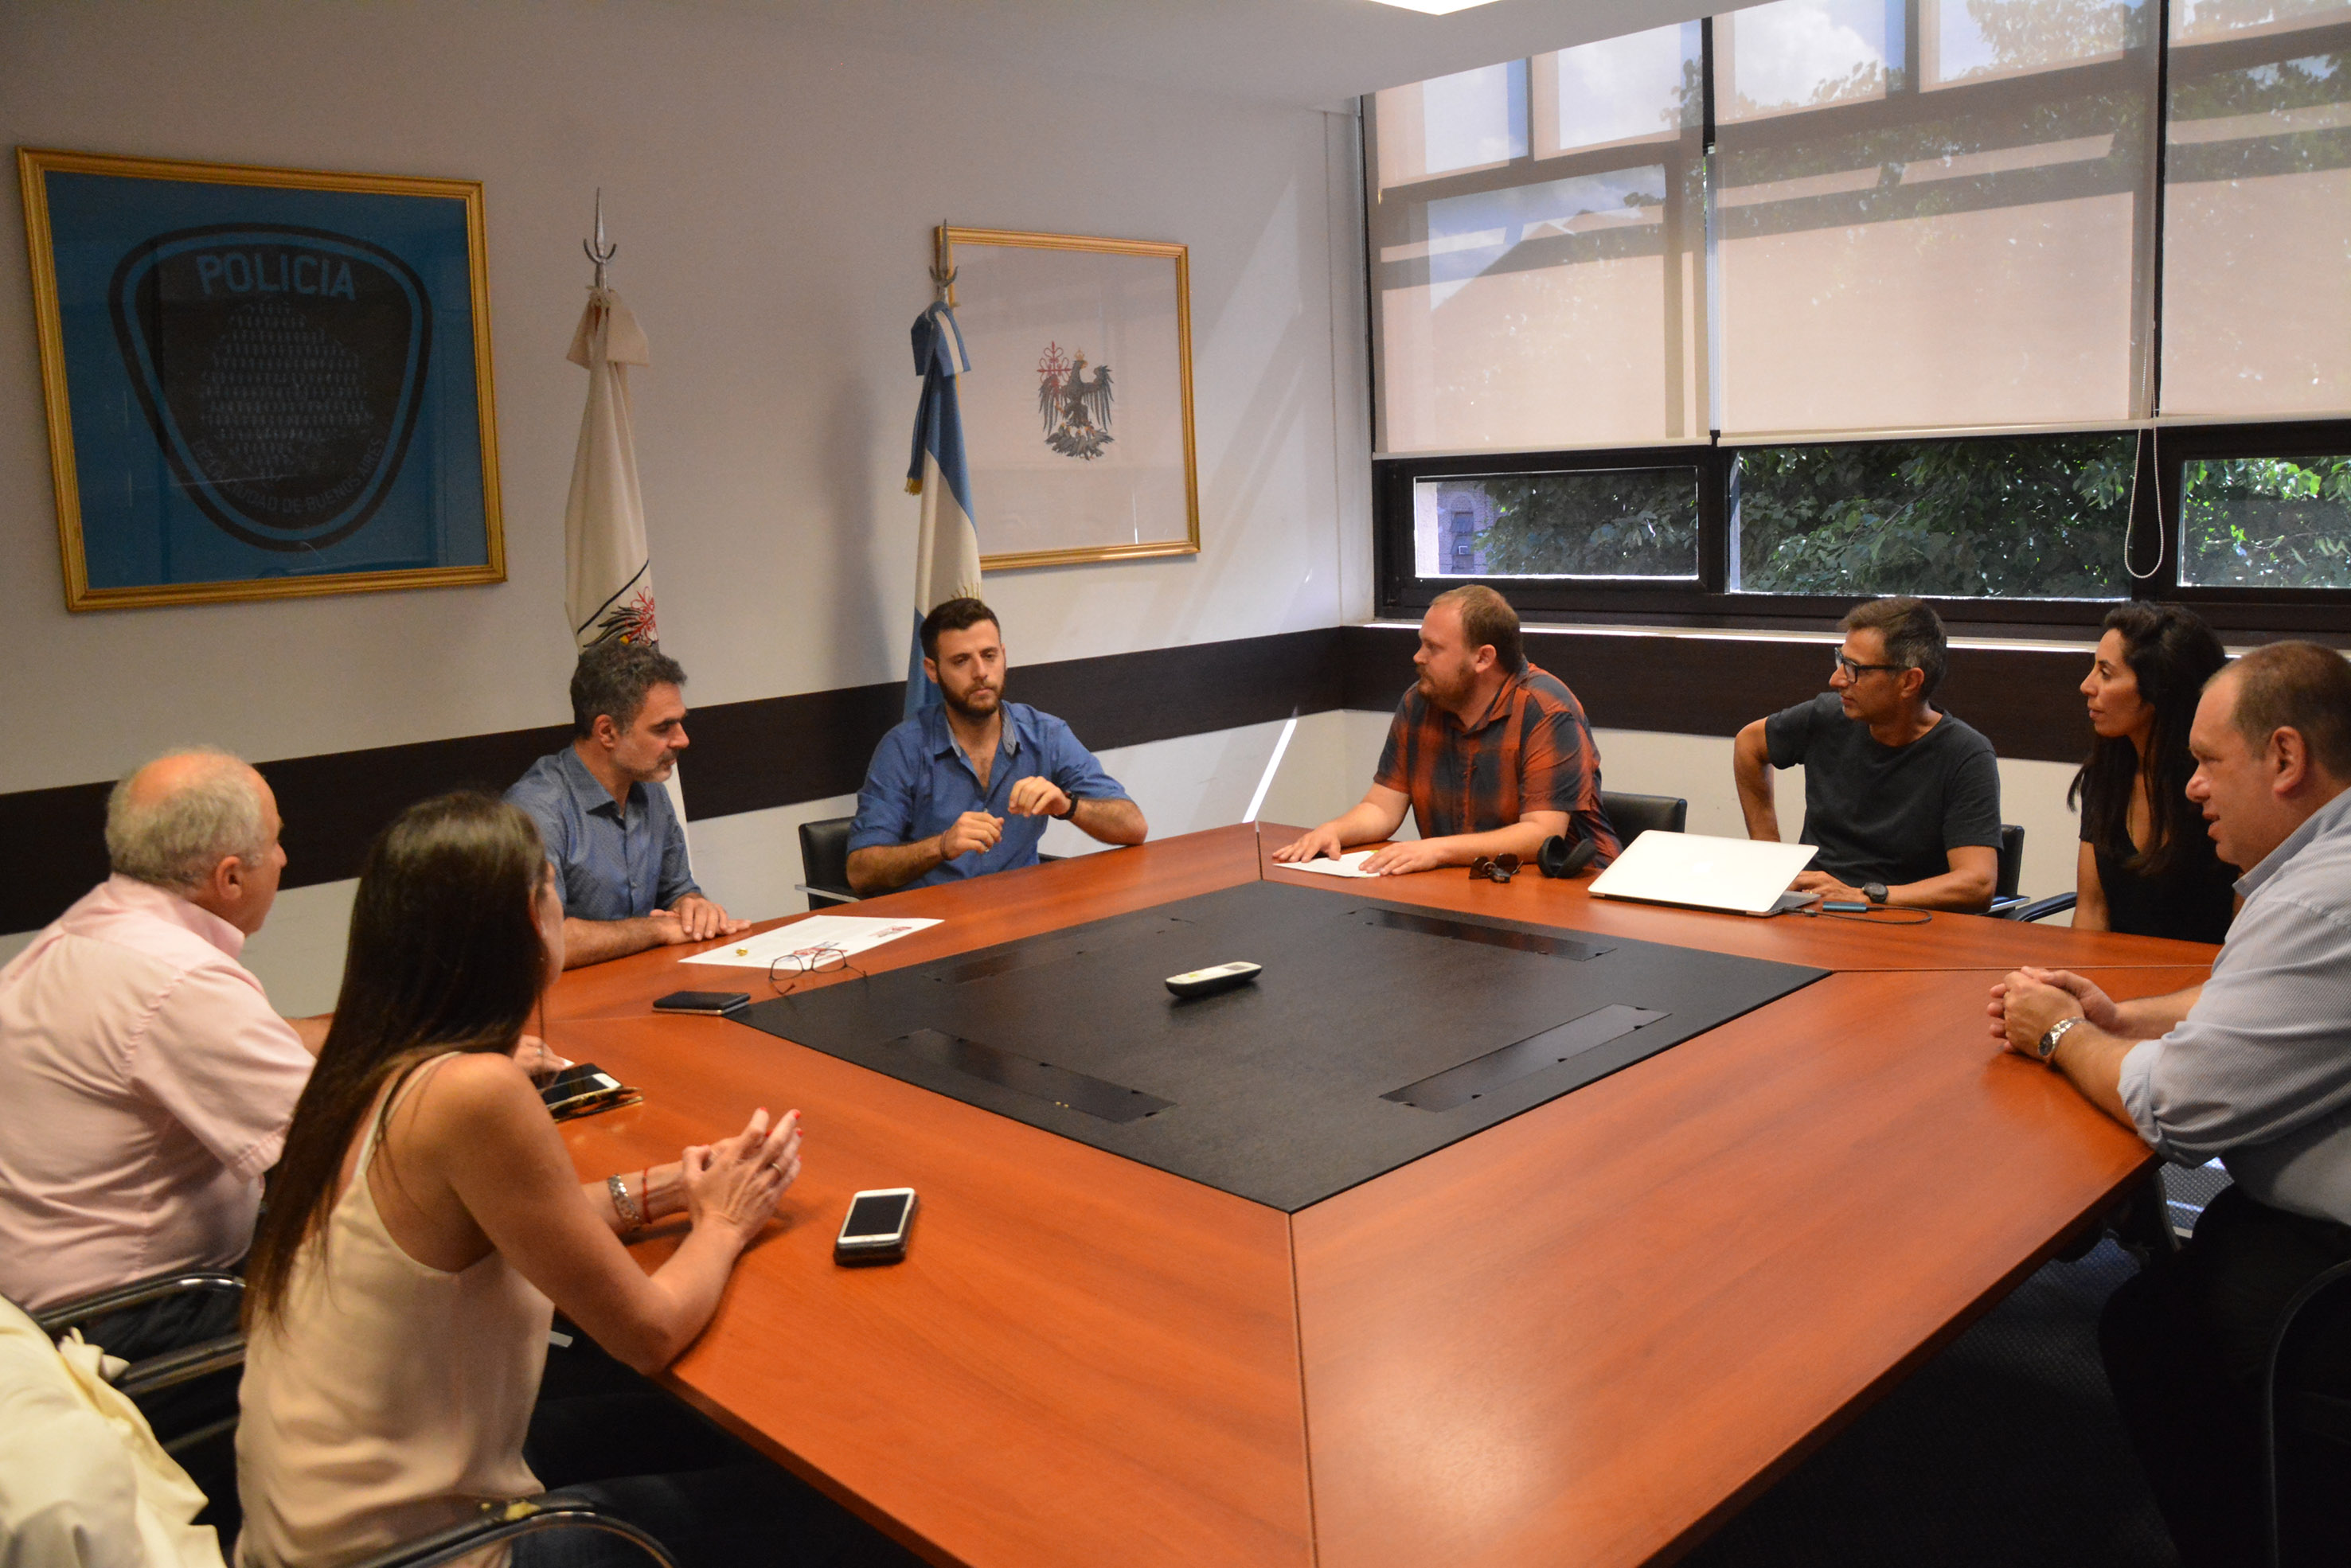 Encuentro por la paz en el Ministerio de Justicia y Seguridad de la Ciudad Autónoma de Buenos Aires con el representante del club de fútbol Hapoel Katamon de Jerusalén